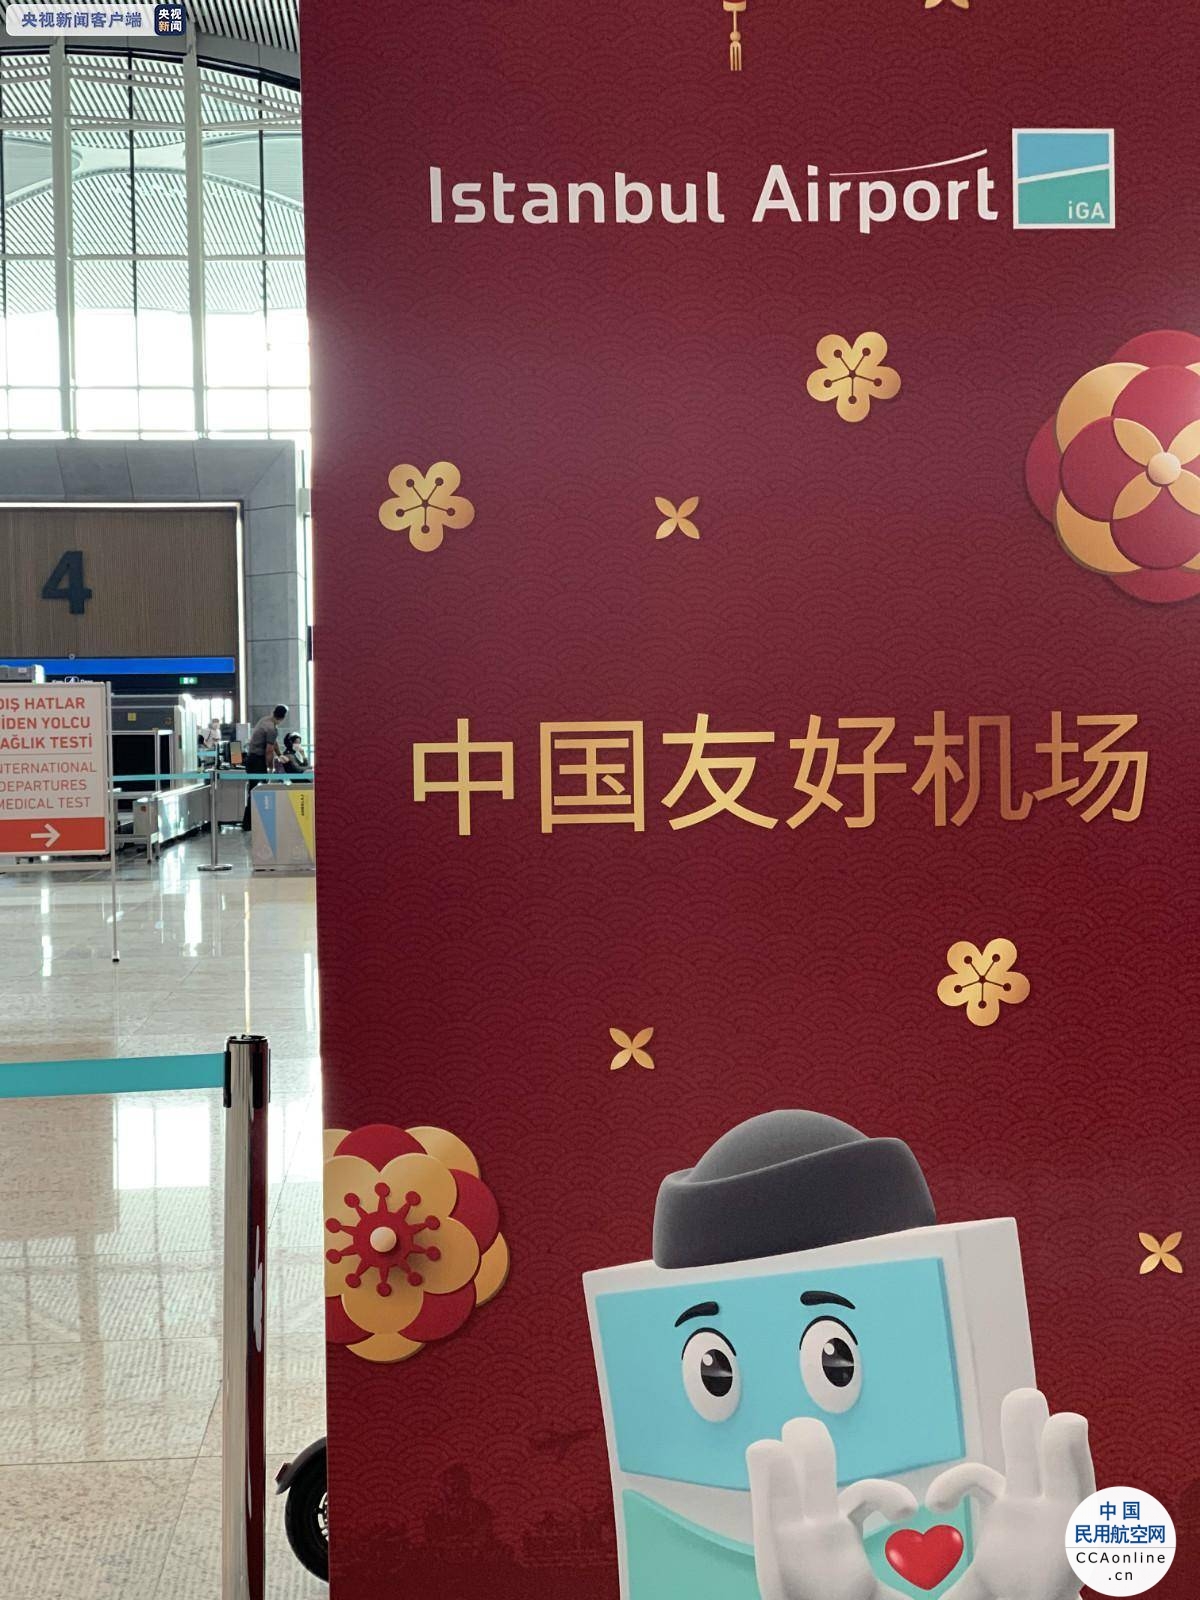 伊斯坦布尔新机场启动“中国友好机场”项目